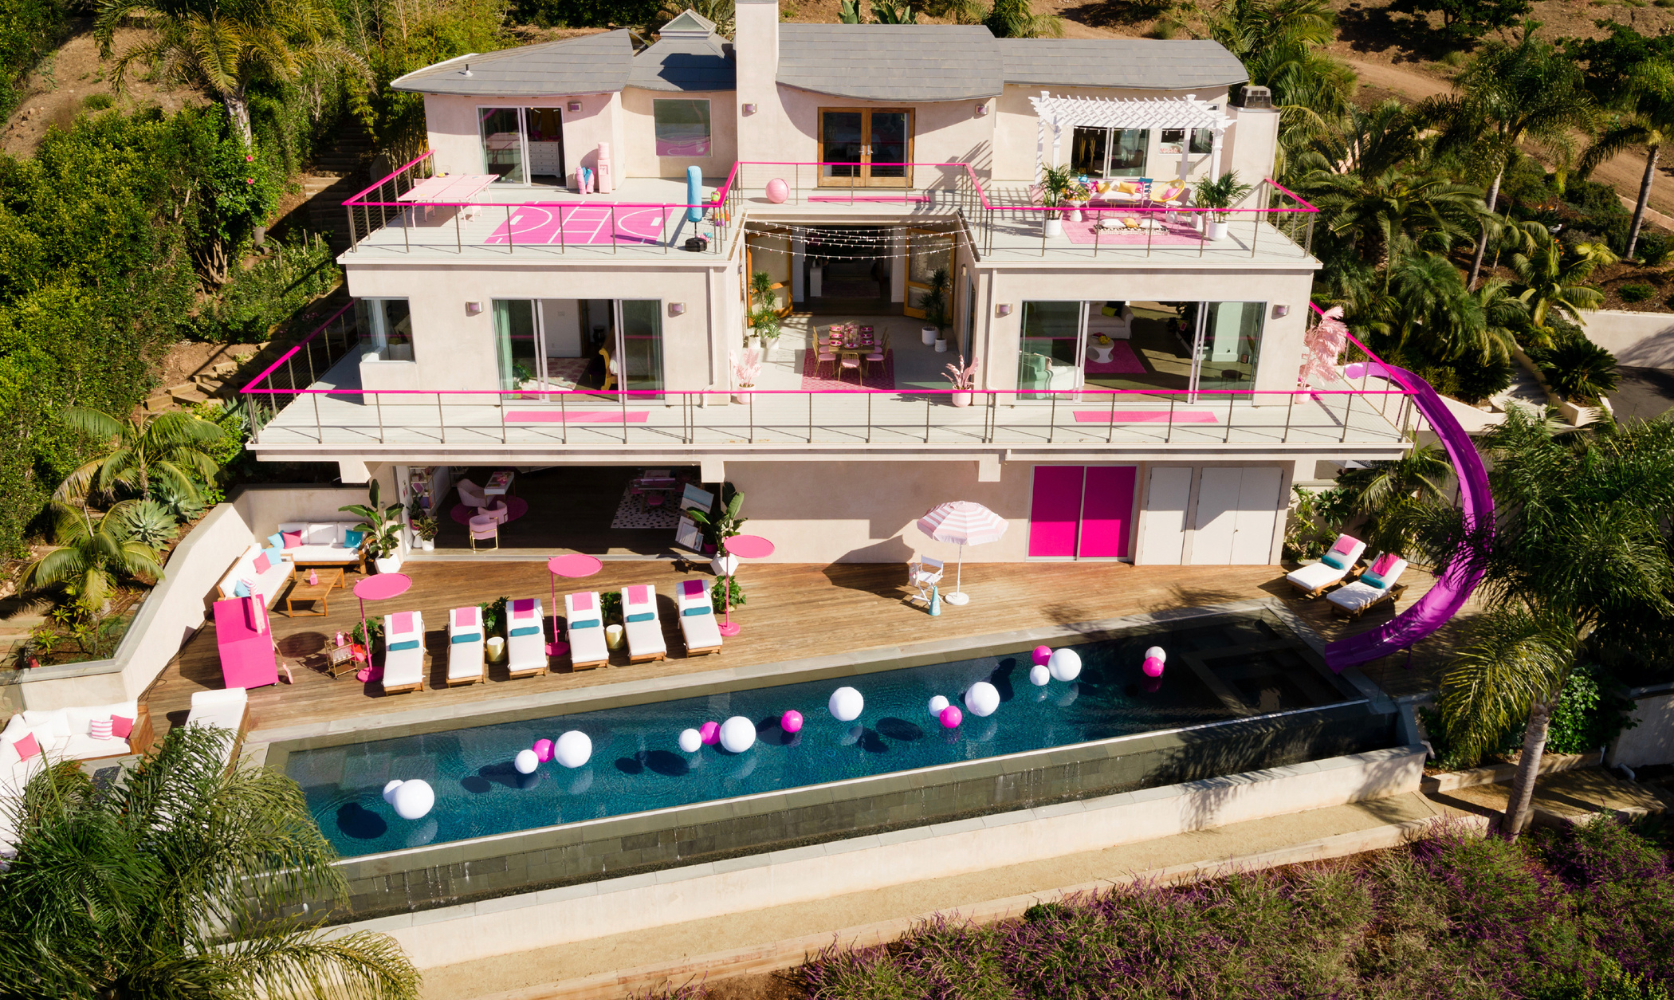 La casa de Barbie existe en Malibú y está disponible en Airbnb para alquilar